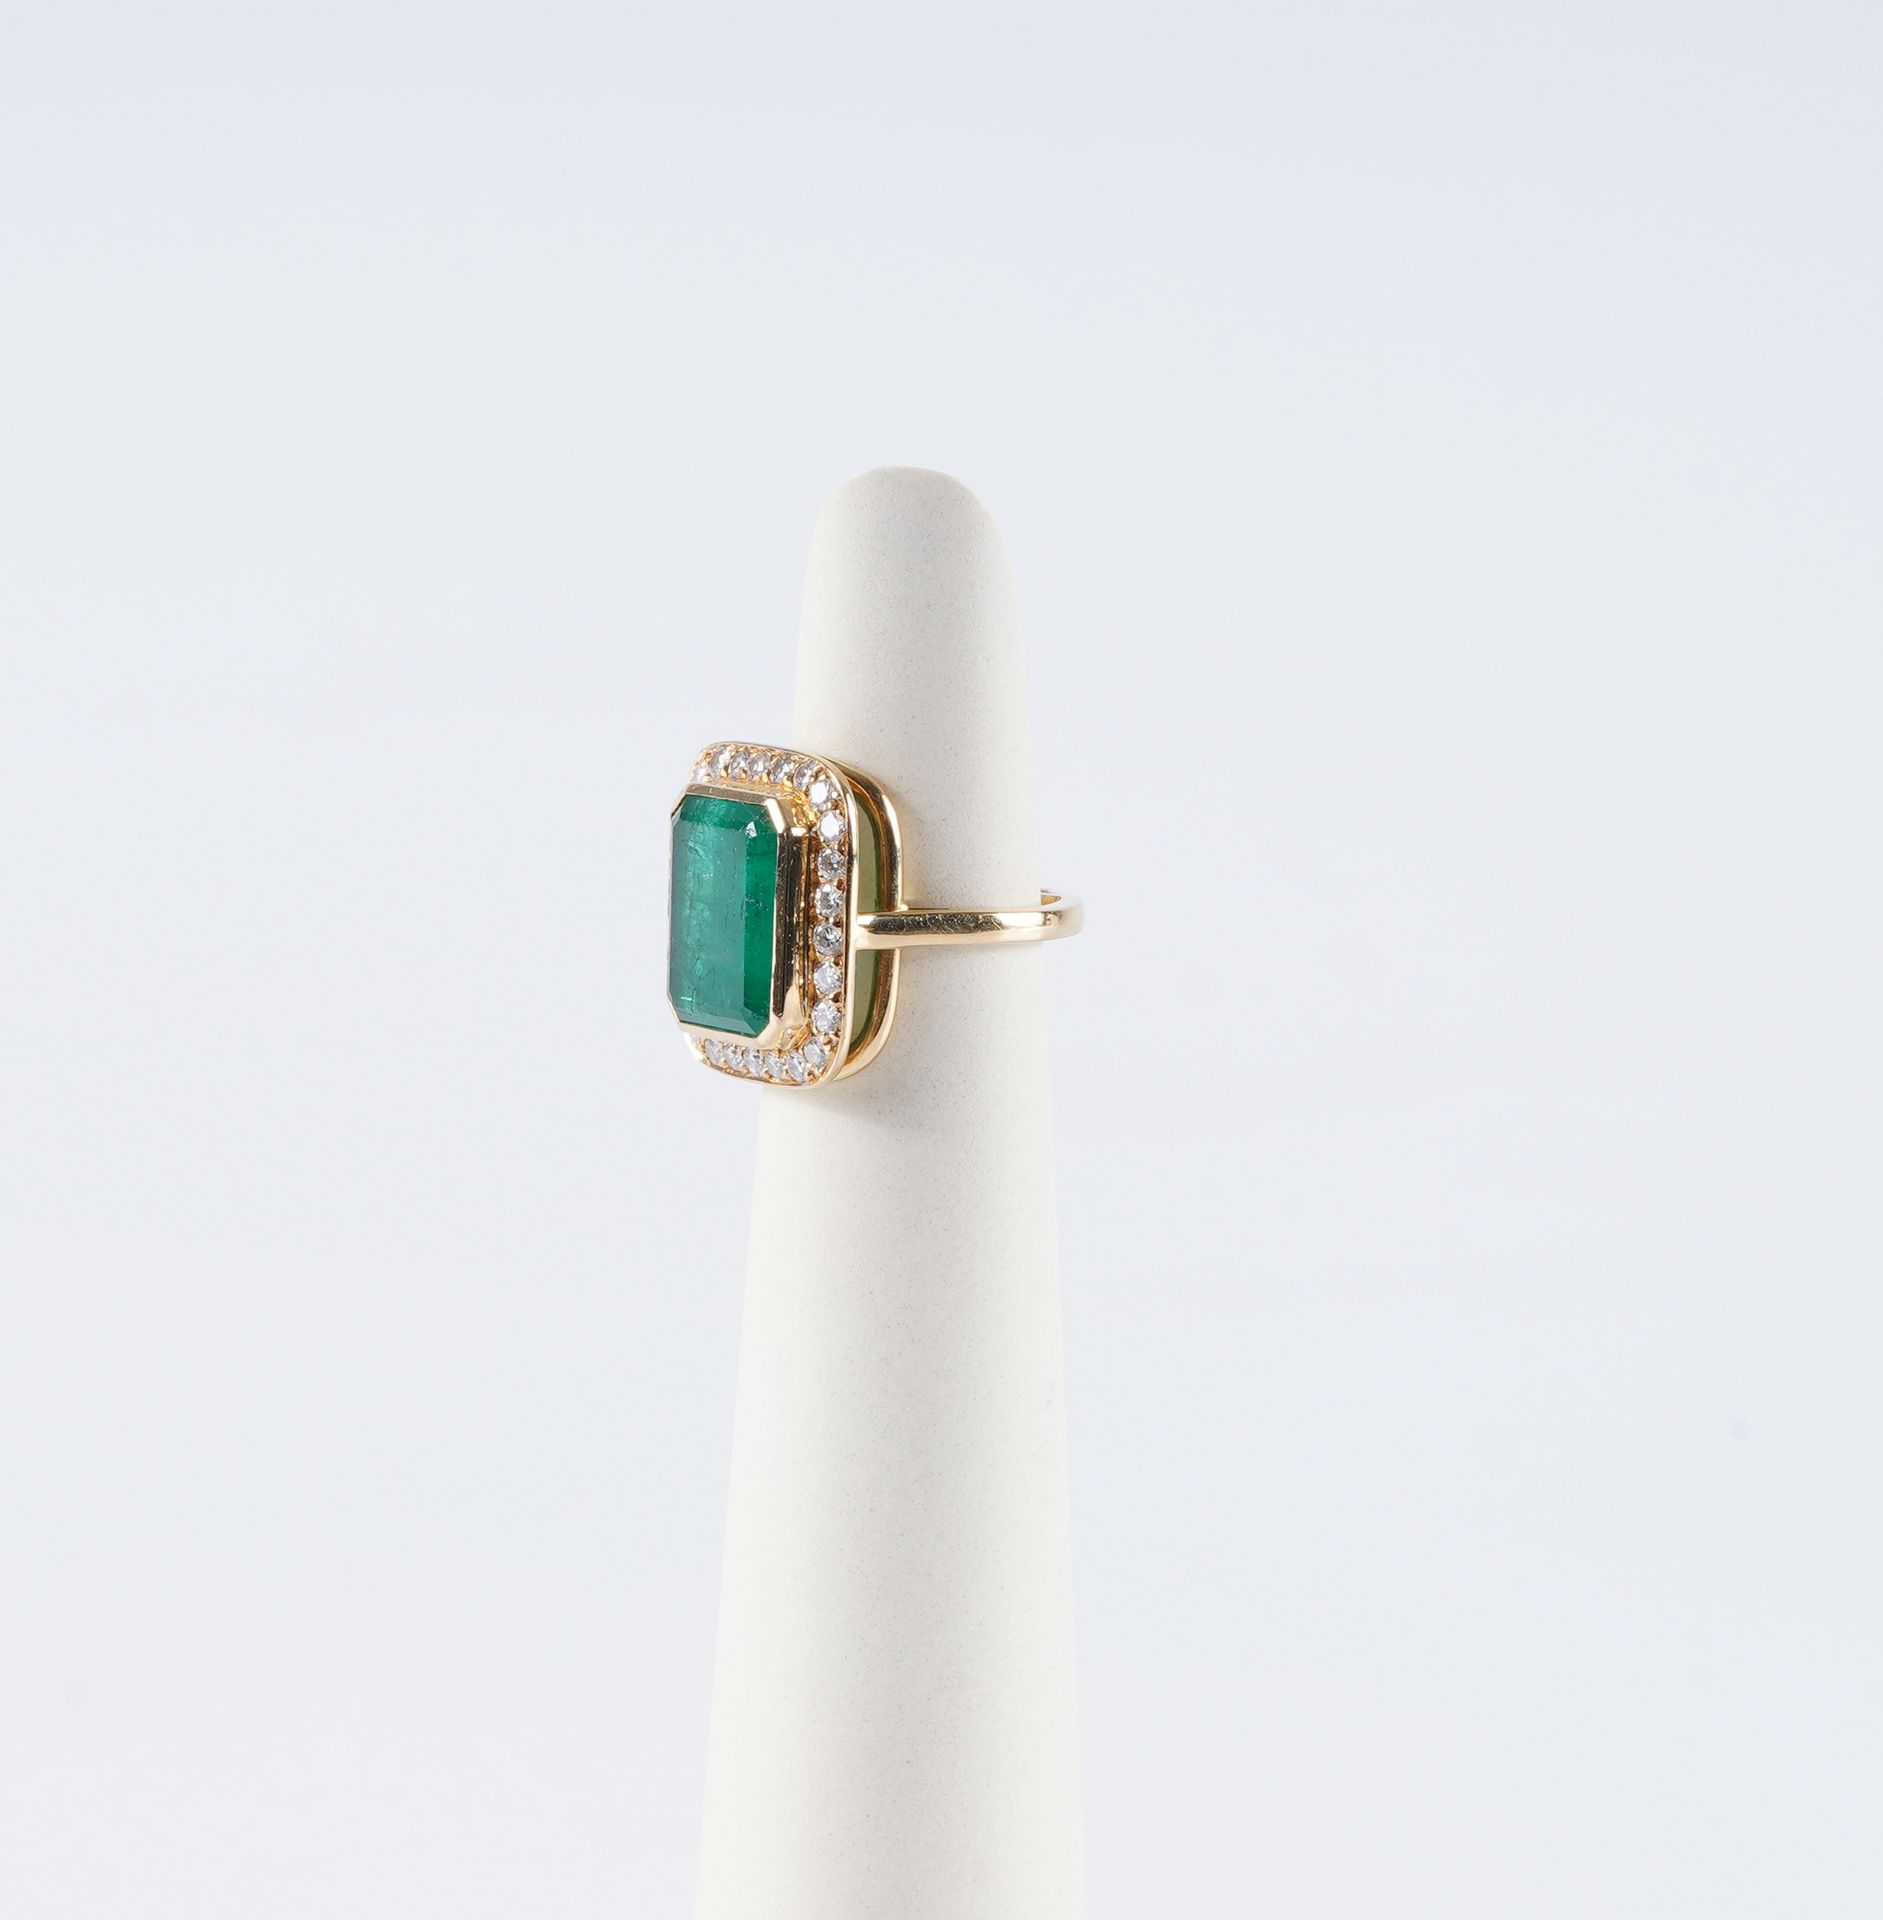 Bague en or et émeraude 18K金戒指，绿宝石（可能是哥伦比亚的）4.50克拉，钻石+- 0.65克拉，尺寸46（不包括桥+- 50）。